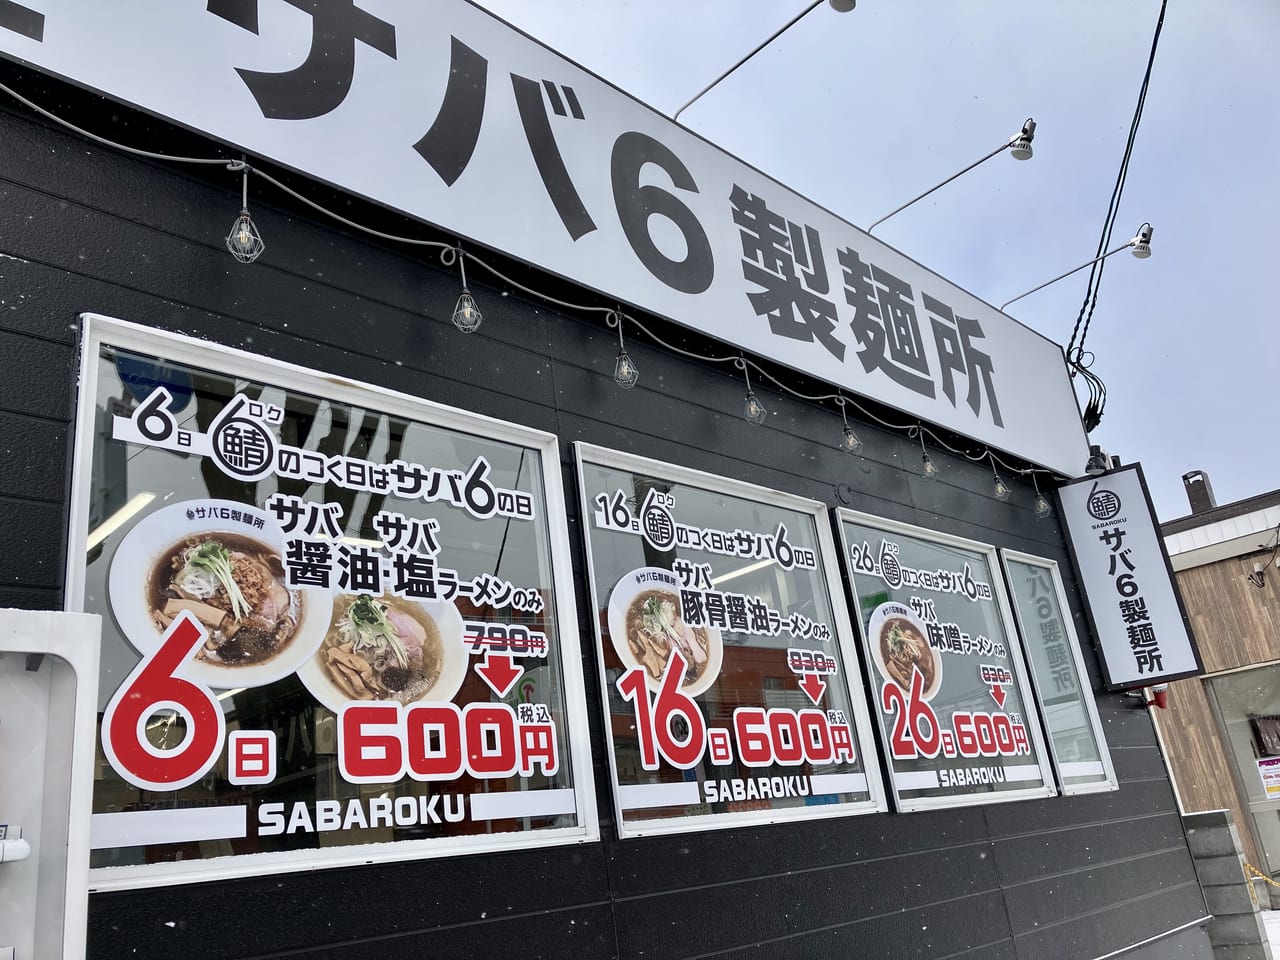 美香保の地で大阪の名店が北海道初道場で話題でした。「サバ6製麺所 美香保店」が4月14日で閉店。